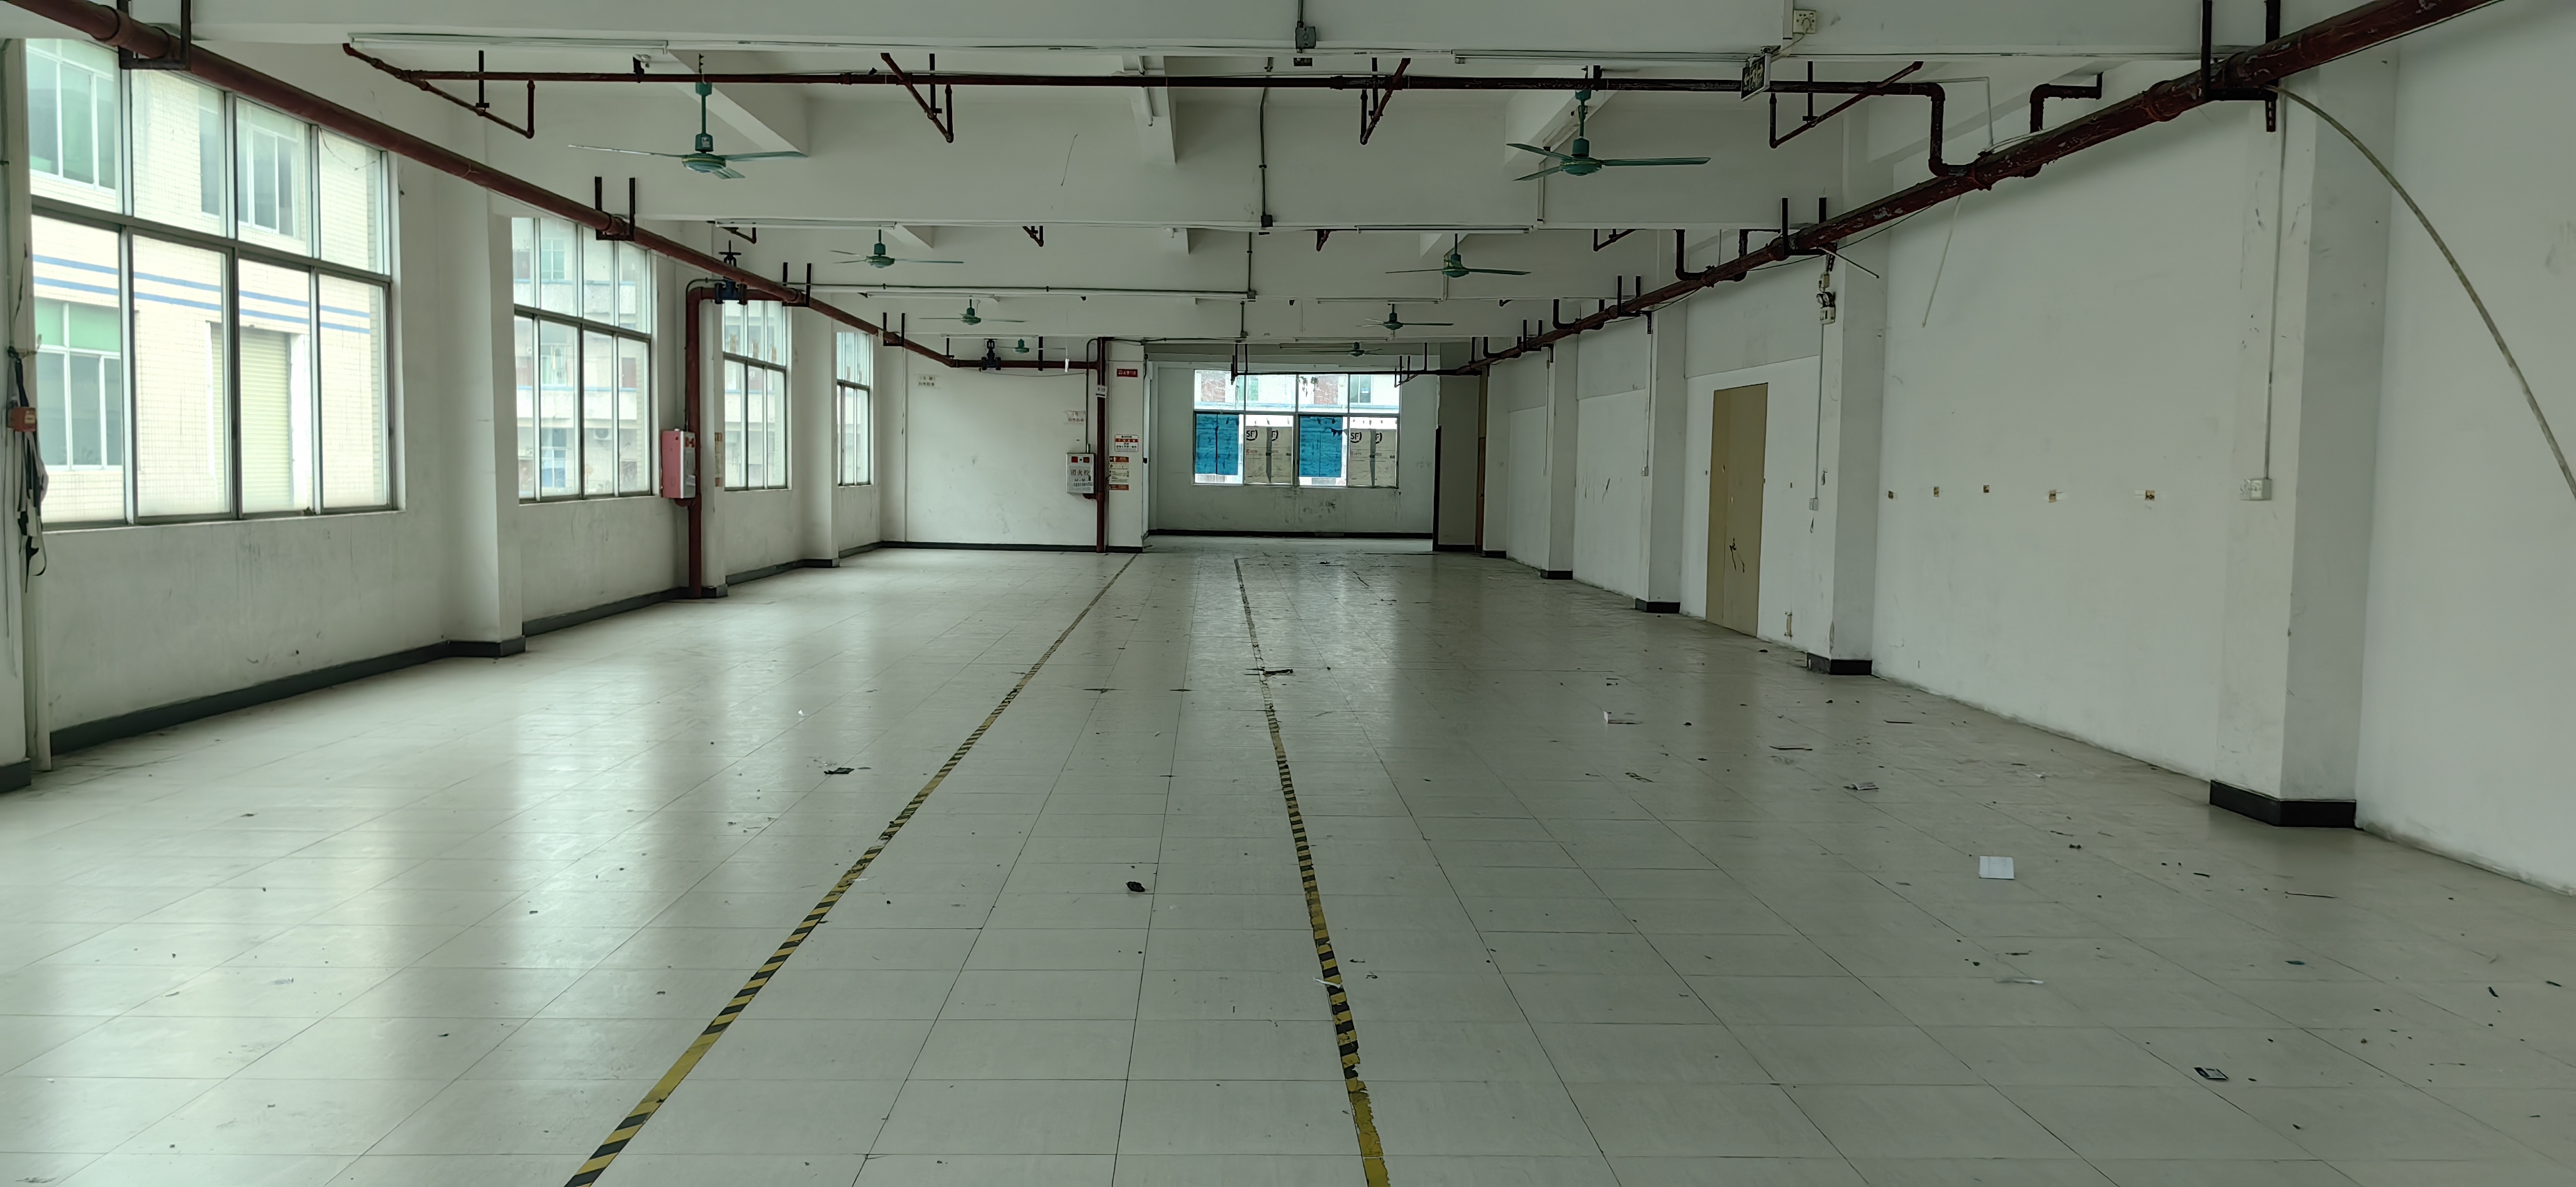 新塘镇新沙地铁口附近楼上带装修办公室厂房仓库出租800平米